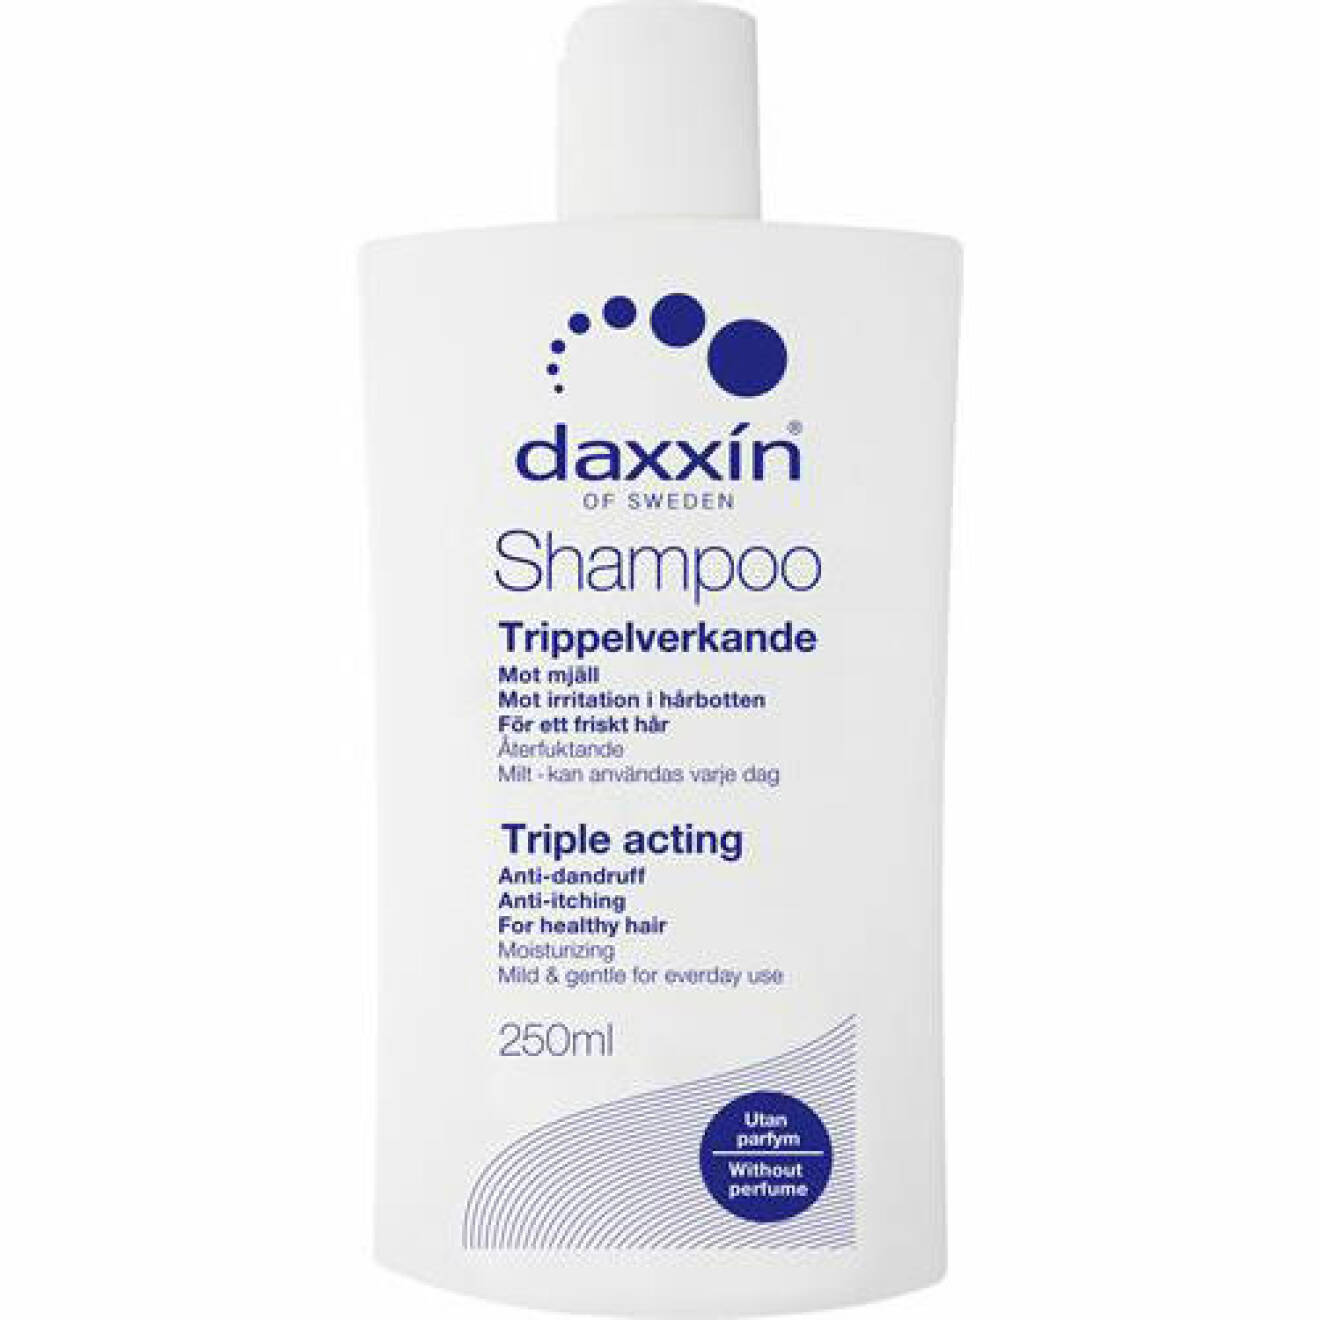 Mjällschampo för torr hårbotten från daxxin